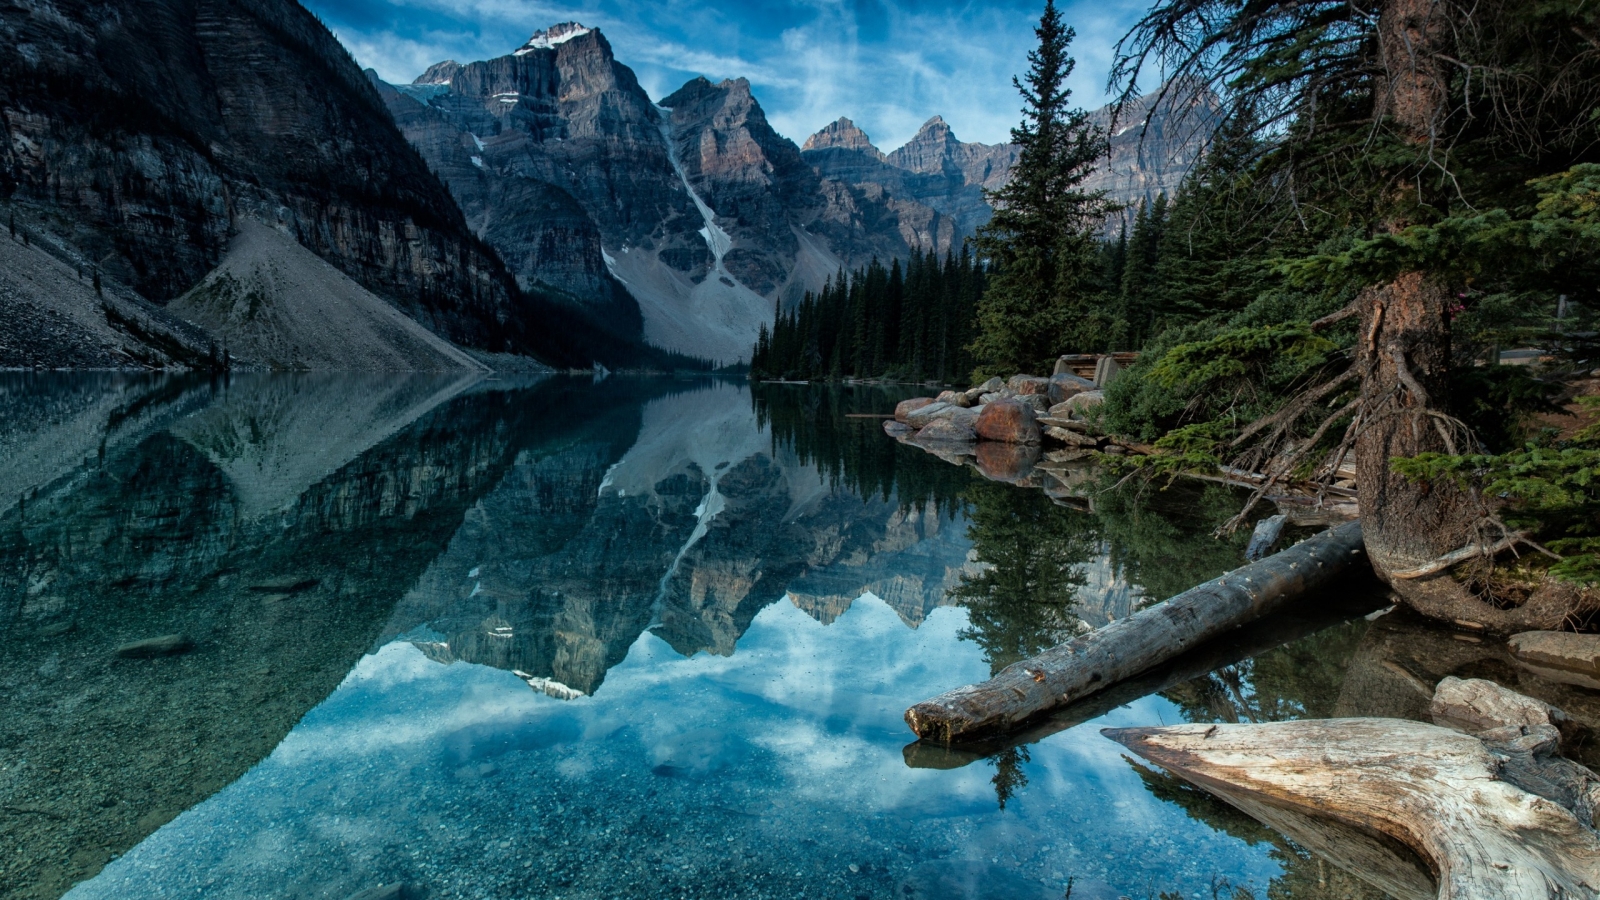 Moraine Lake Alberta Canada for 1600 x 900 HDTV resolution